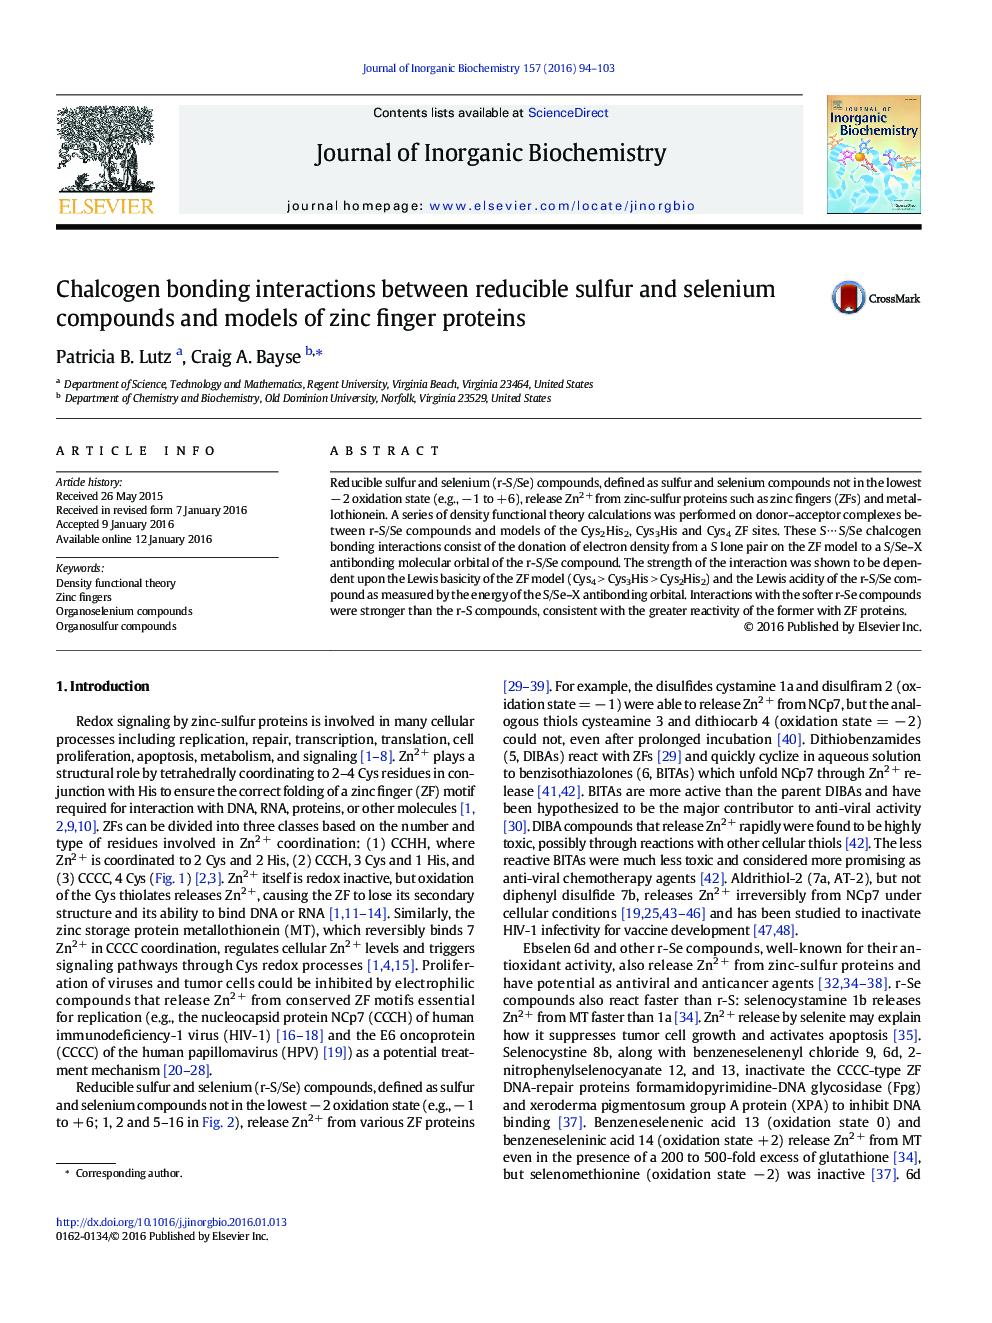 تعامل چالکوهن اتصال بین ترکیبات گوگرد و ترکیب سلنیوم و مدل های پروتئین های انگشت روی 